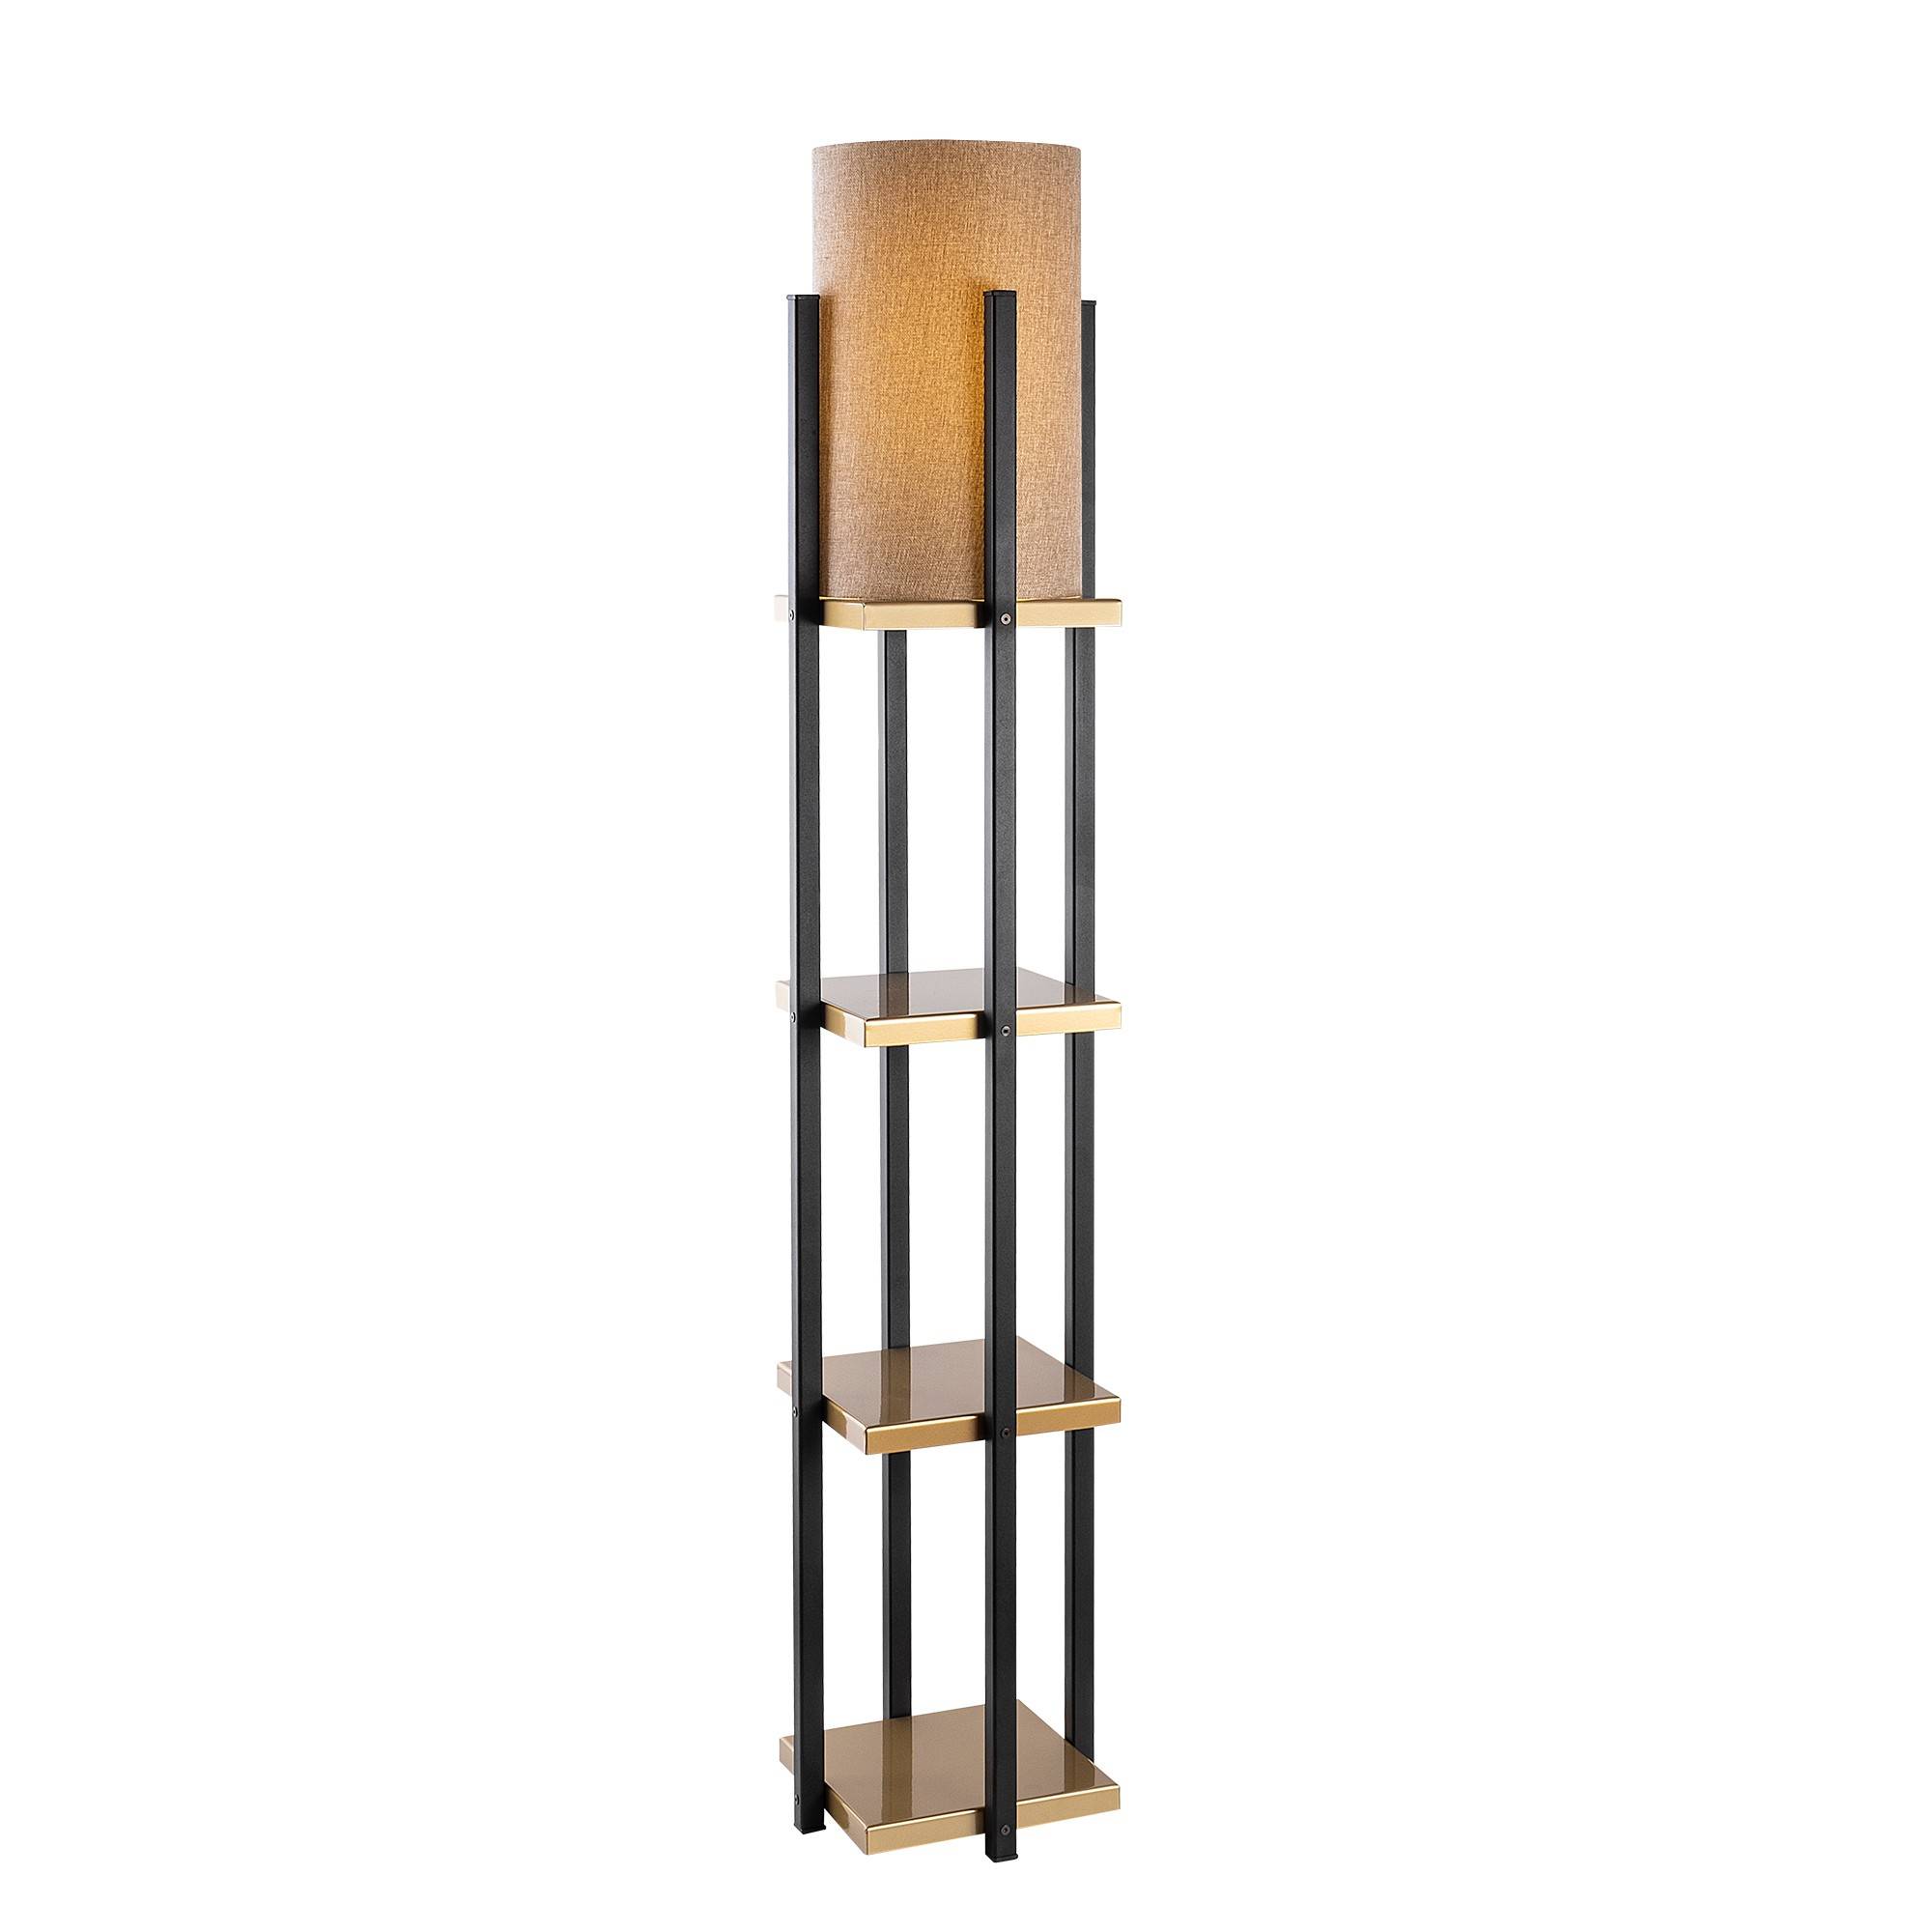 Ulkoda Lámpara combinada de 3 estantes H130cm Metal negro y dorado Tela marrón blanca